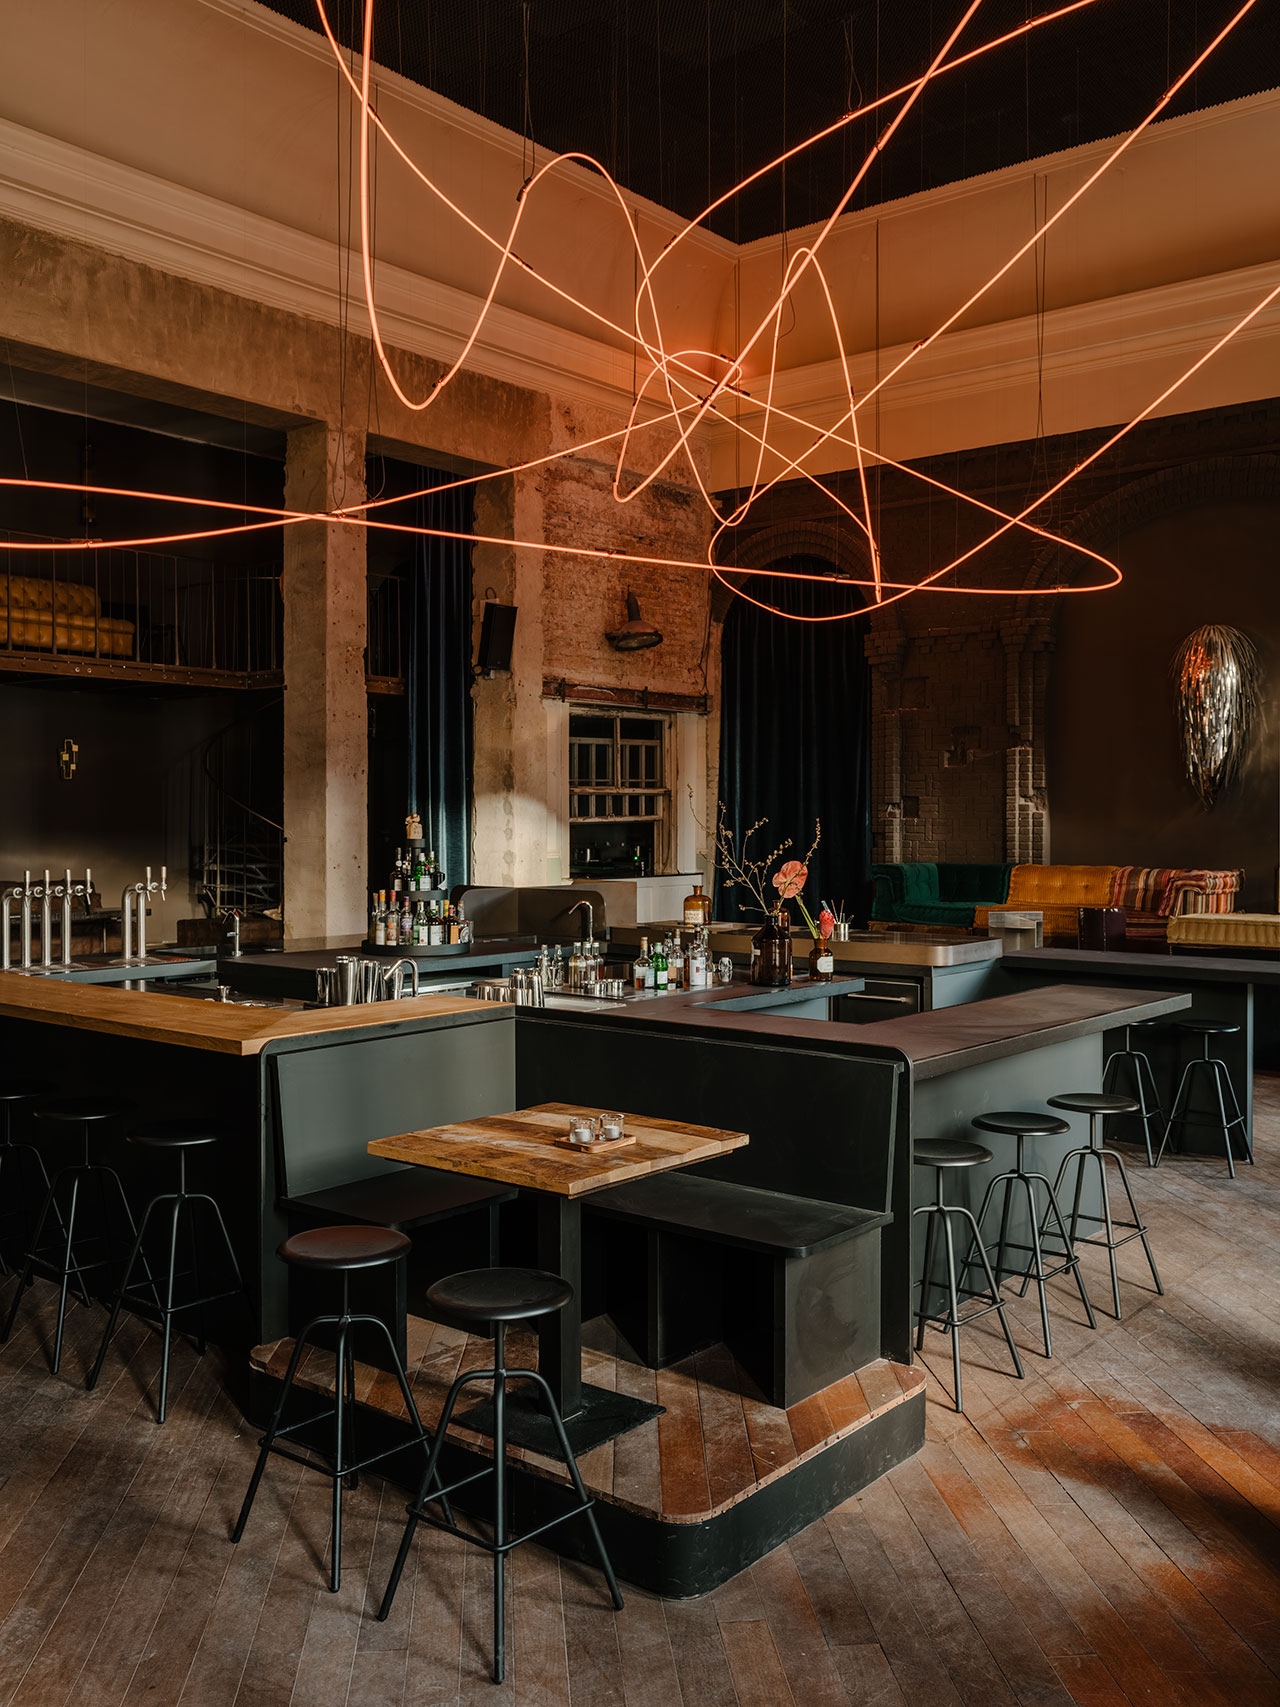 扭结酒吧 &  餐厅。 与 Hidden Fortress 合作的酒吧设计。Atelier Haussmann 的酒吧凳子。Kerim Seiler 的灯光装置。 罗伯特·里格摄影。 由 Kerim Seiler 提供。